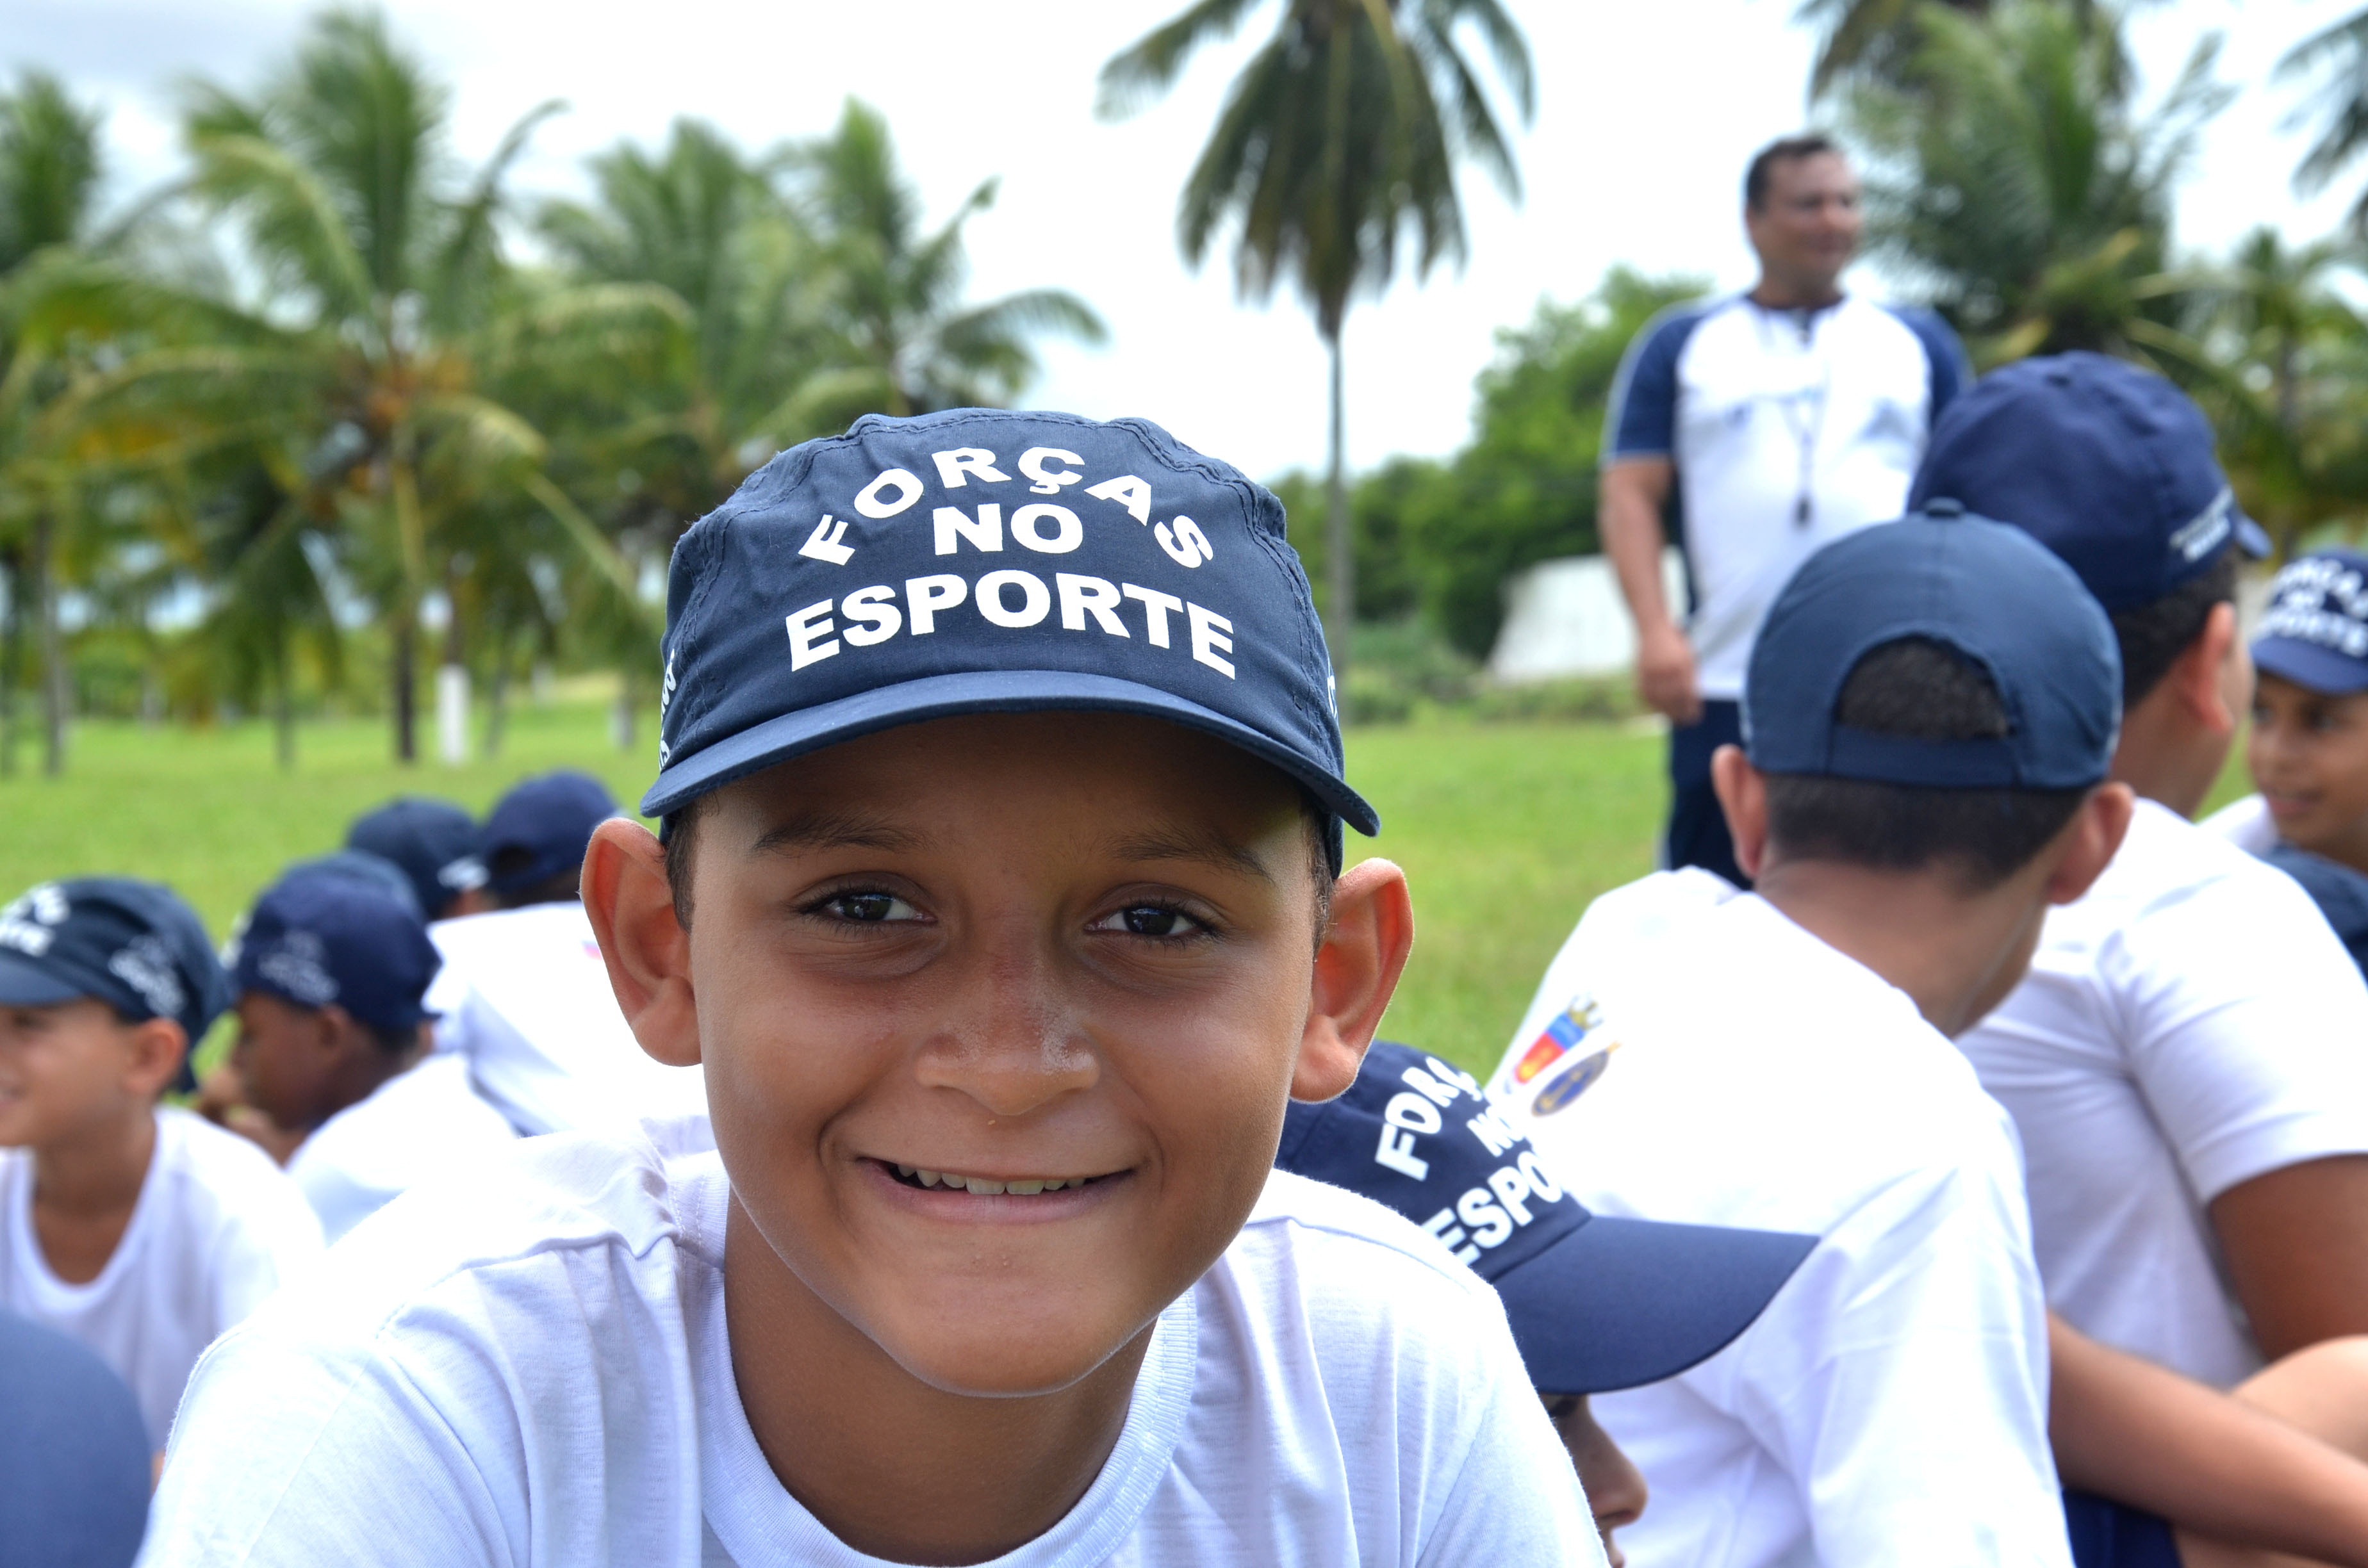 Programa “Forças no Esporte” beneficia mais de 300 alunos em São Gonçalo